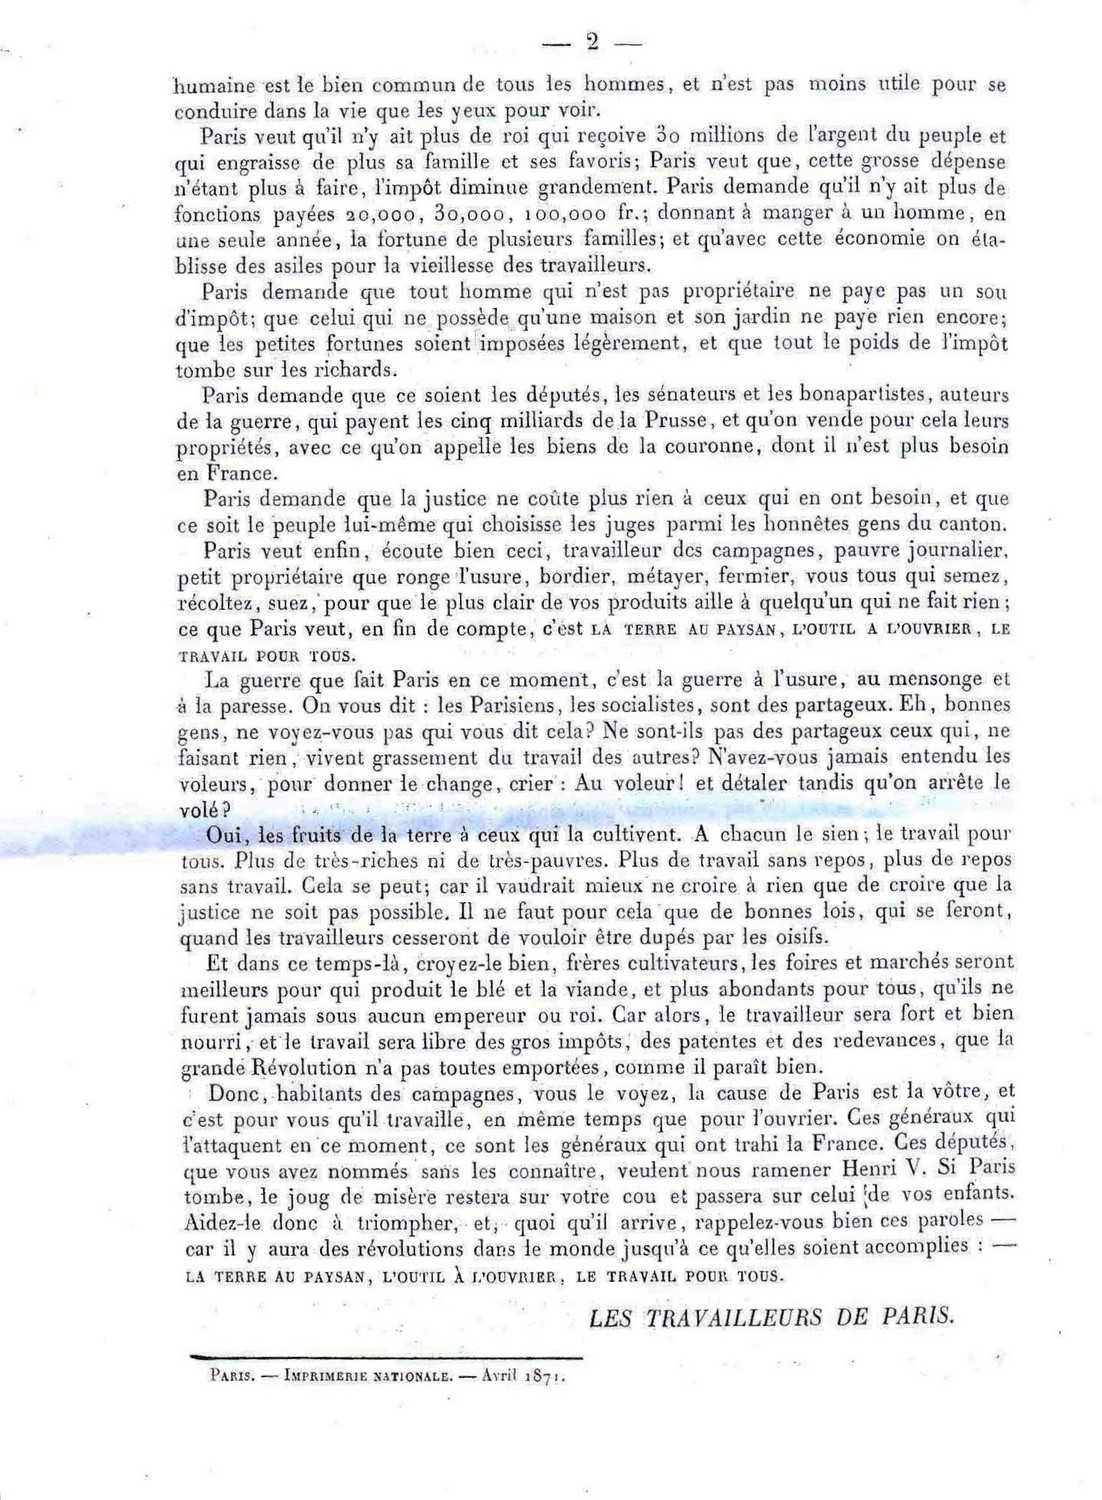 Tract "Appel aux travailleurs des campagnes", publié dans "La Commune" du 10 avril 1871 (2ème partie)